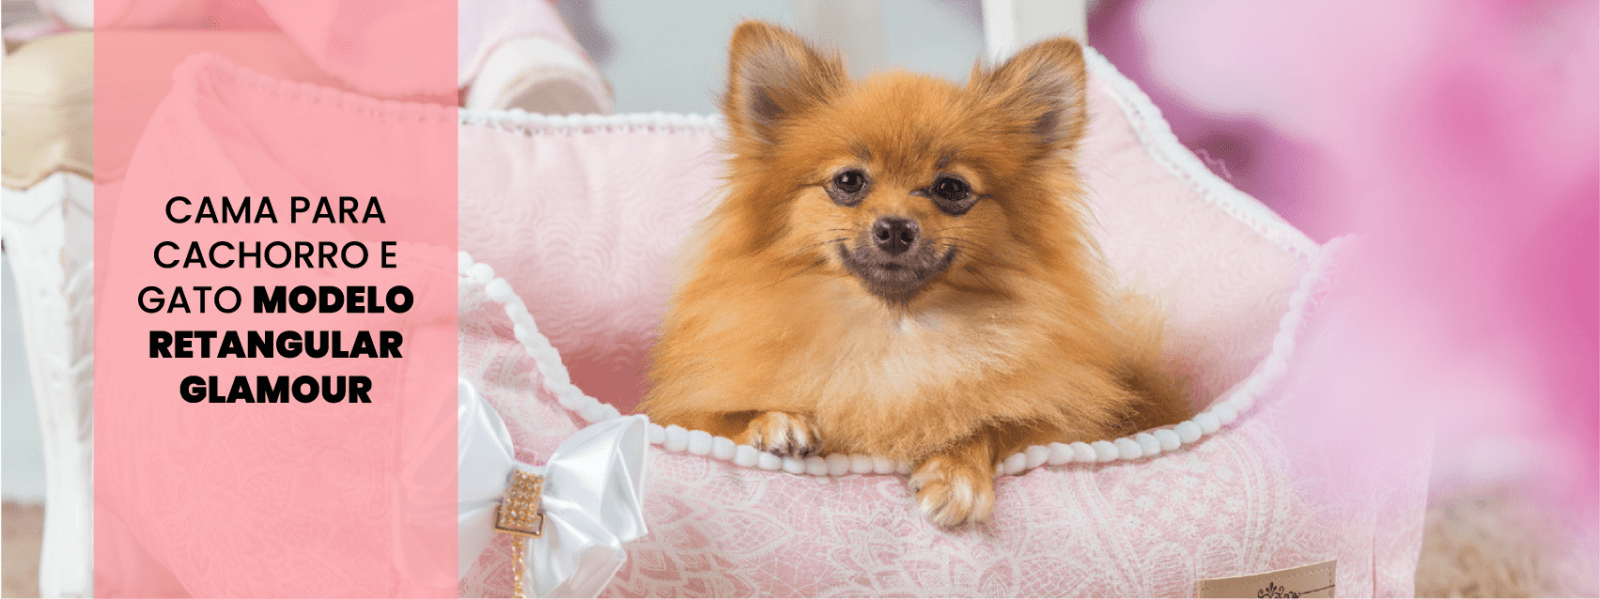 Cama para Cachorro e Gato Modelo Retangular Glamour: delicadeza e charme em cada detalhe